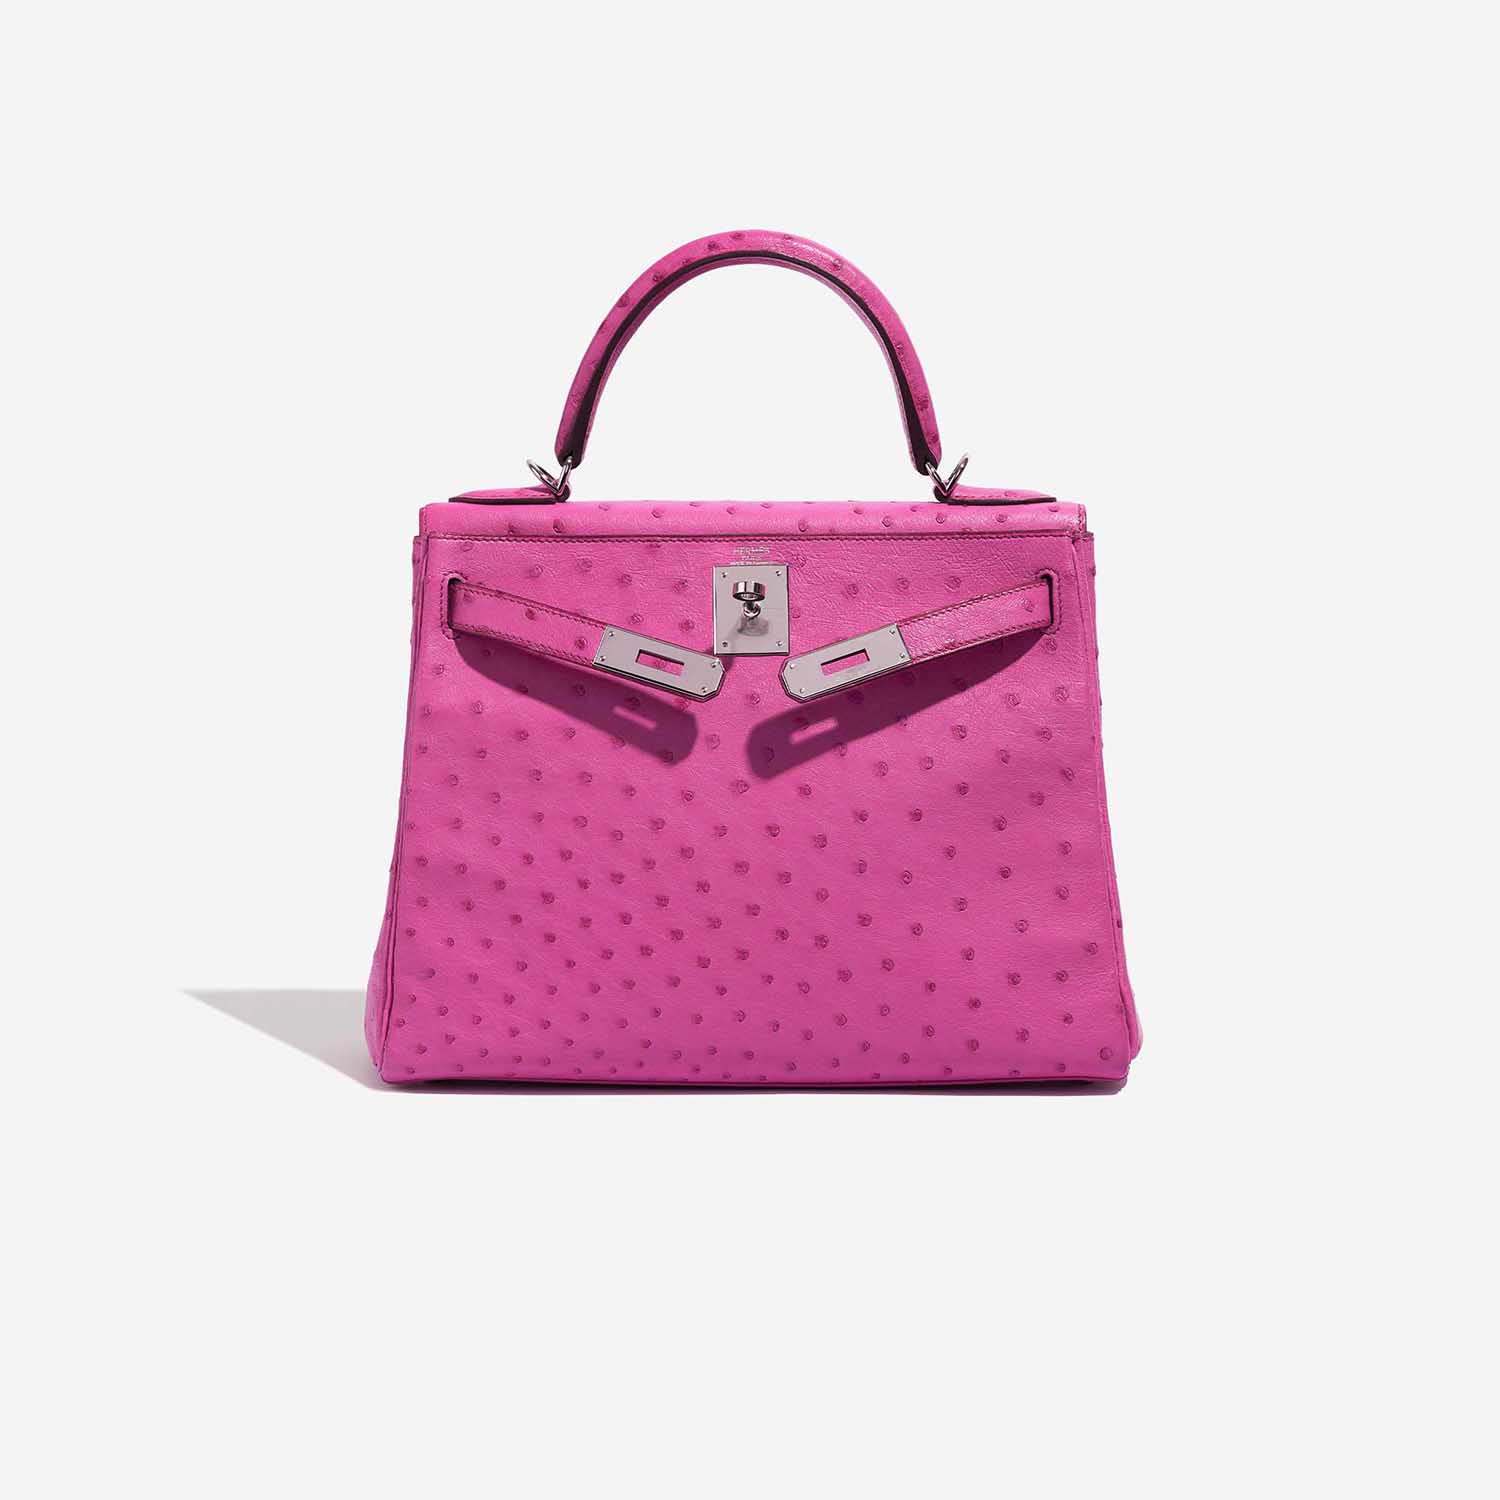 Pre-owned Hermès Tasche Kelly 28 Ostrich Fuchsia Pink Front Open | Verkaufen Sie Ihre Designer-Tasche auf Saclab.com